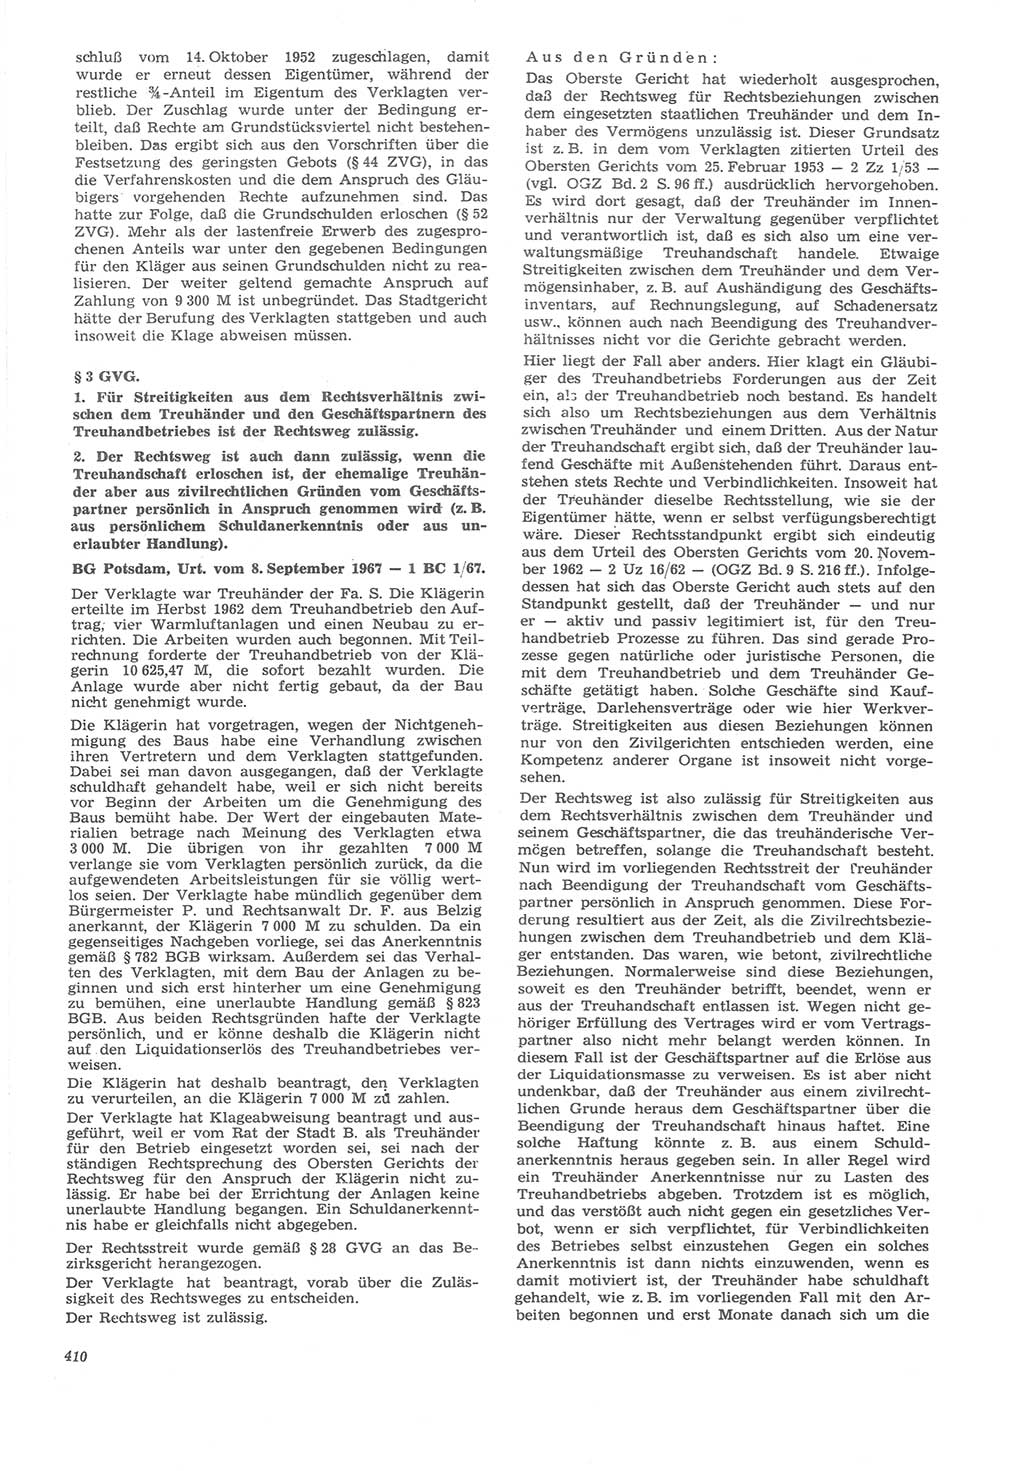 Neue Justiz (NJ), Zeitschrift für Recht und Rechtswissenschaft [Deutsche Demokratische Republik (DDR)], 22. Jahrgang 1968, Seite 410 (NJ DDR 1968, S. 410)